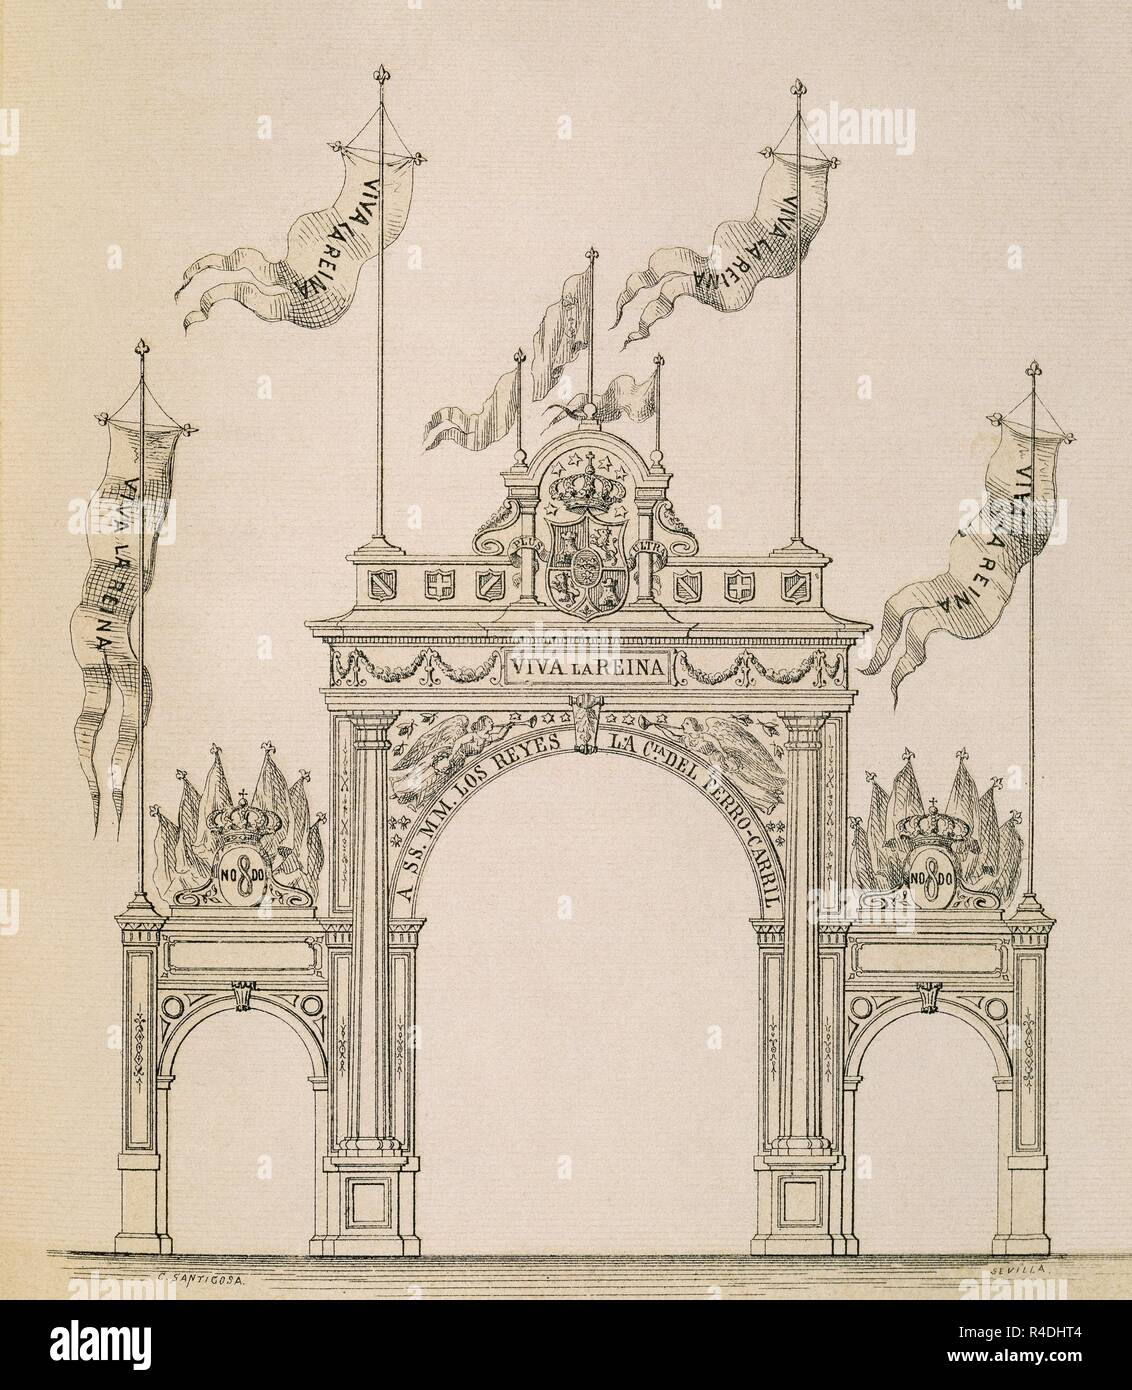 XILOGRAFIA - ARCO DEL FERROCARRIL - (Séville) - 1862. Auteur : anonyme. Emplacement : collection privée. MADRID. L'ESPAGNE. Banque D'Images